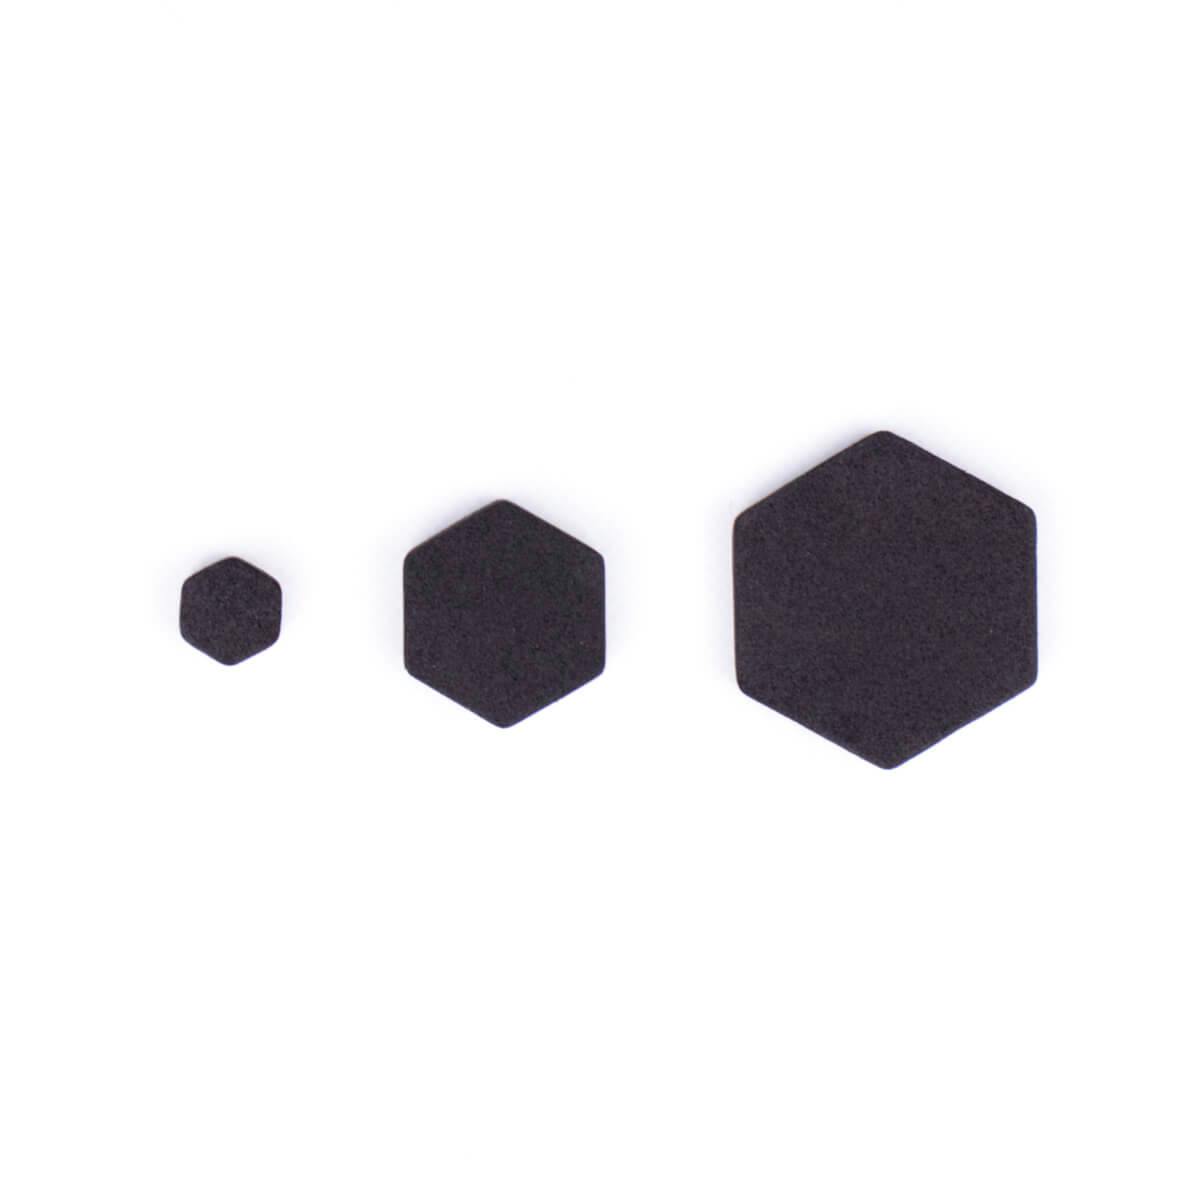 Ukázka velikostí pěnových hexagonů